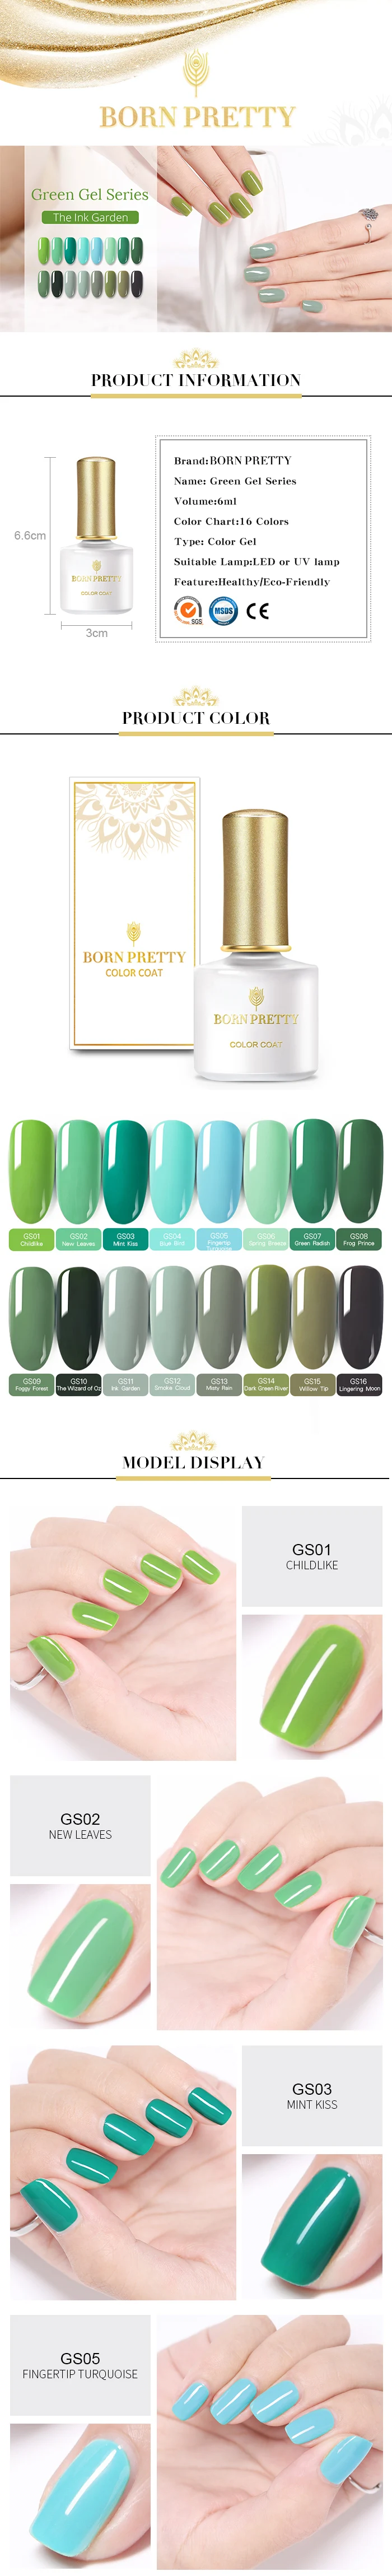 BORN PRETTY зеленый чистый цветной гель для ногтей лак 6 мл замачиваемый гель для дизайна ногтей маникюрный лак УФ светодиодный гель-лампа